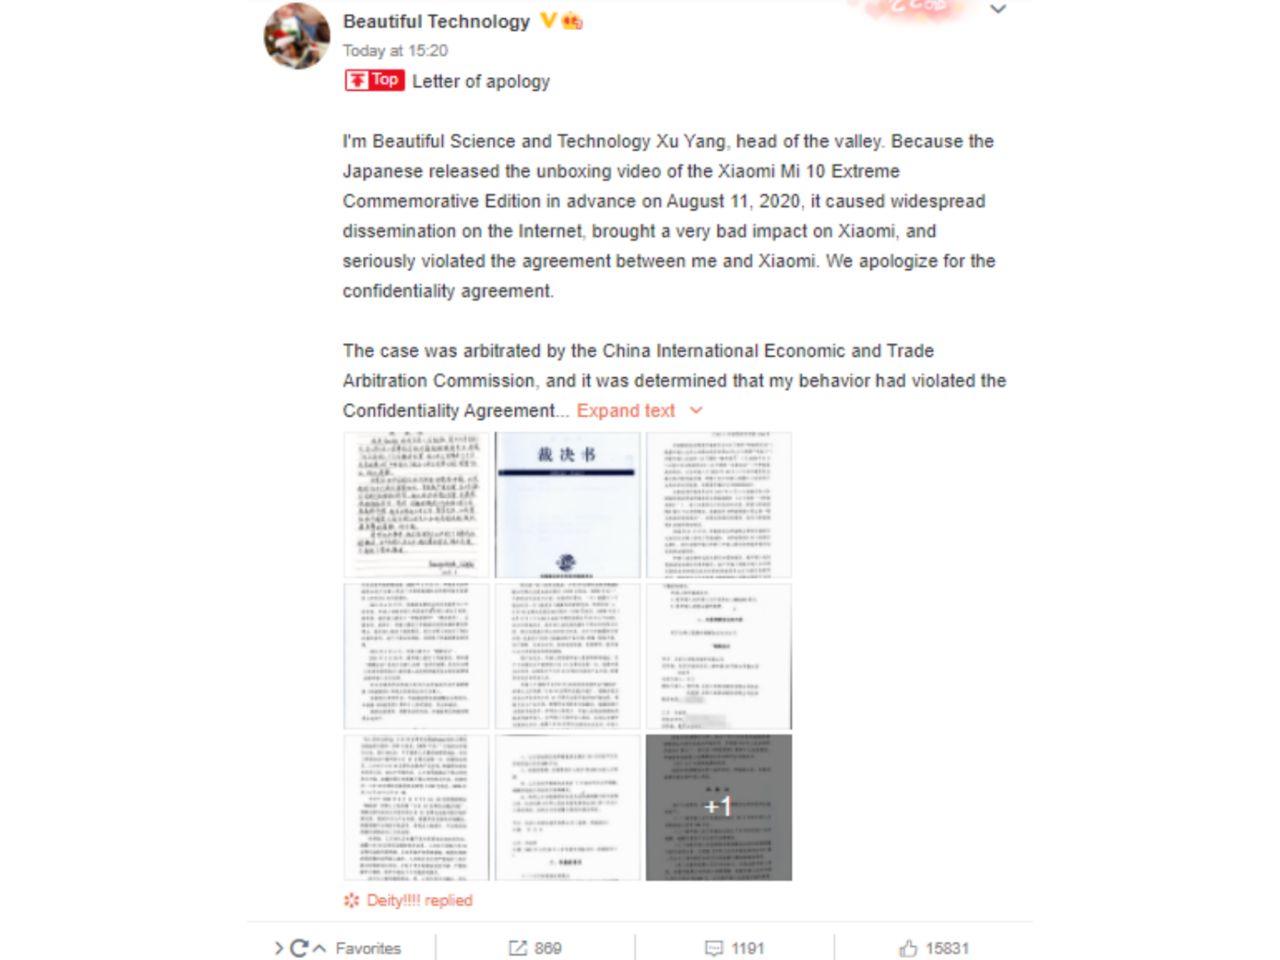 جریمه سنگین بلاگر توسط شیائومی به دلیل لو دادن Mi 10 Ultra: بیش از ١۵٠ هزار دلار! 😶